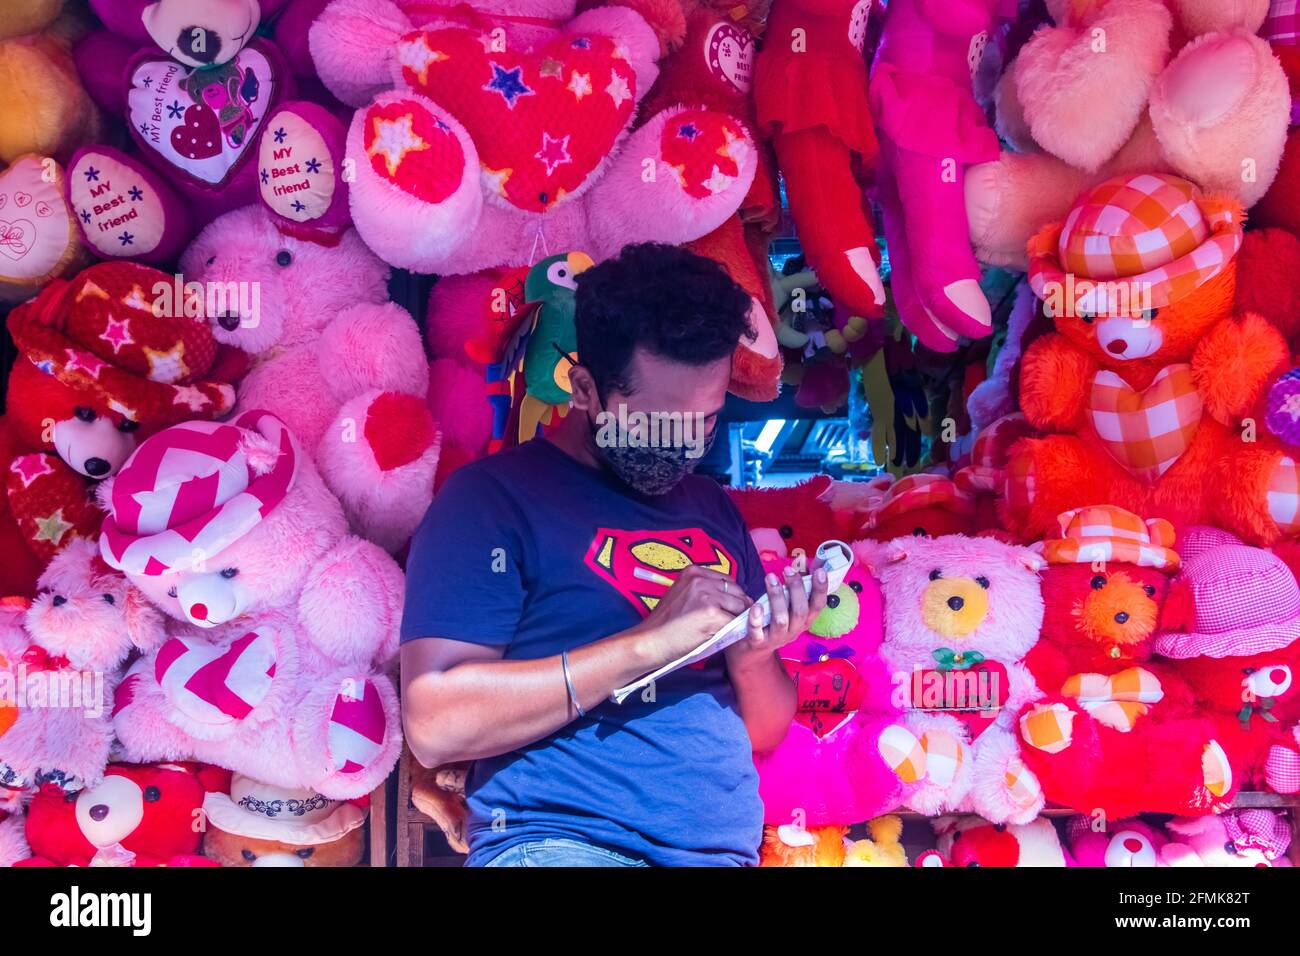 Esposizione di giocattoli per bambini nel mercato locale, ho catturato questa immagine da Chalk Bazar, Dhaka, Bangladesh, Asia Foto Stock